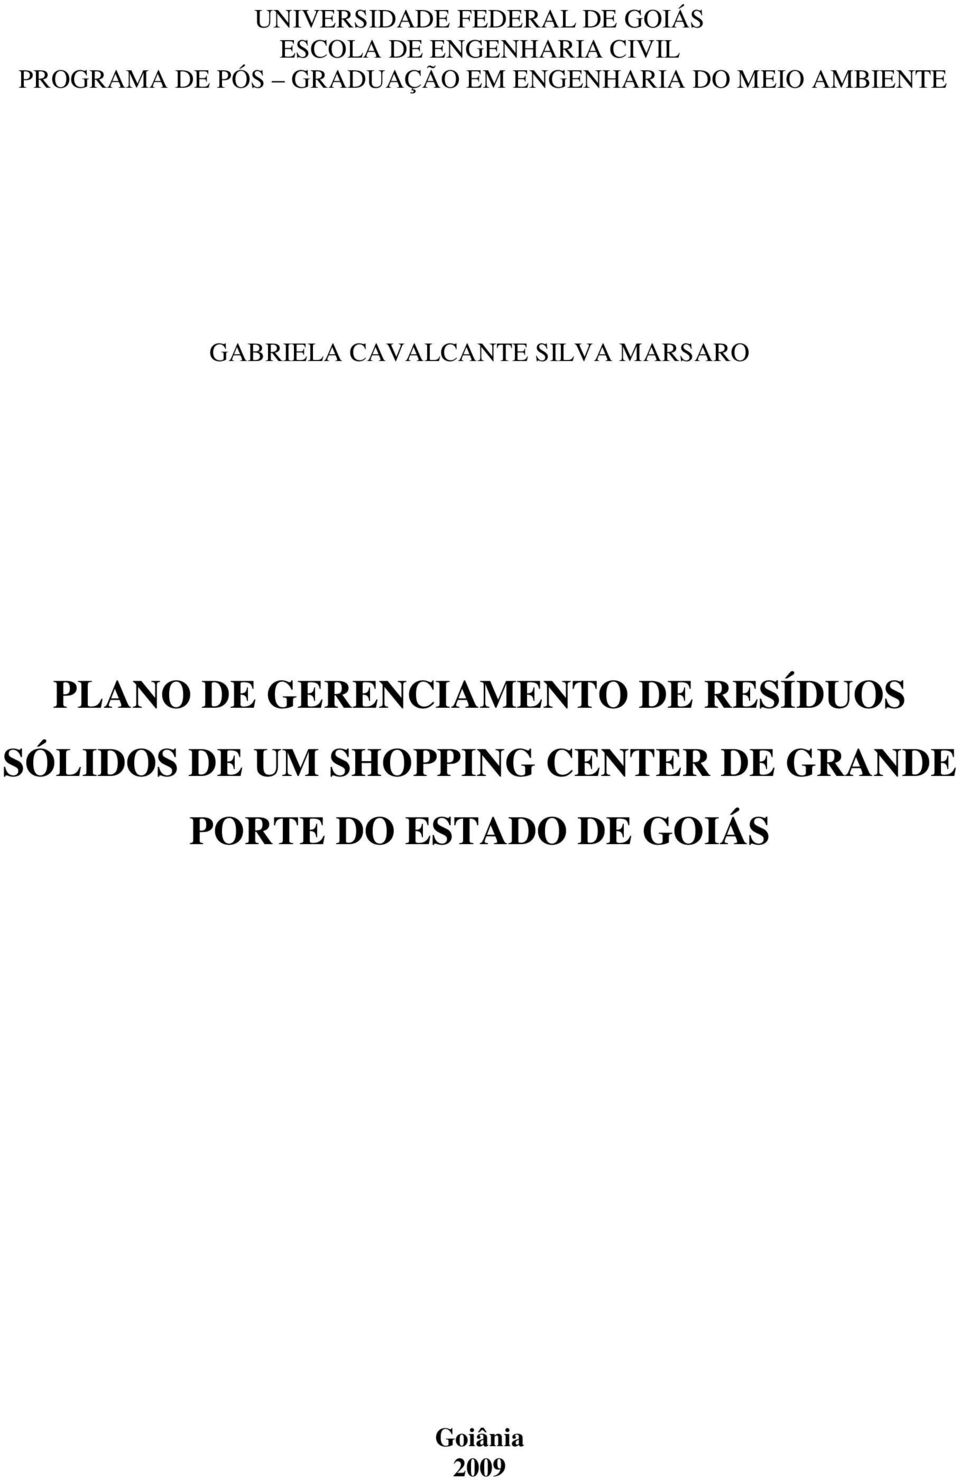 GABRIELA CAVALCANTE SILVA MARSARO PLANO DE GERENCIAMENTO DE